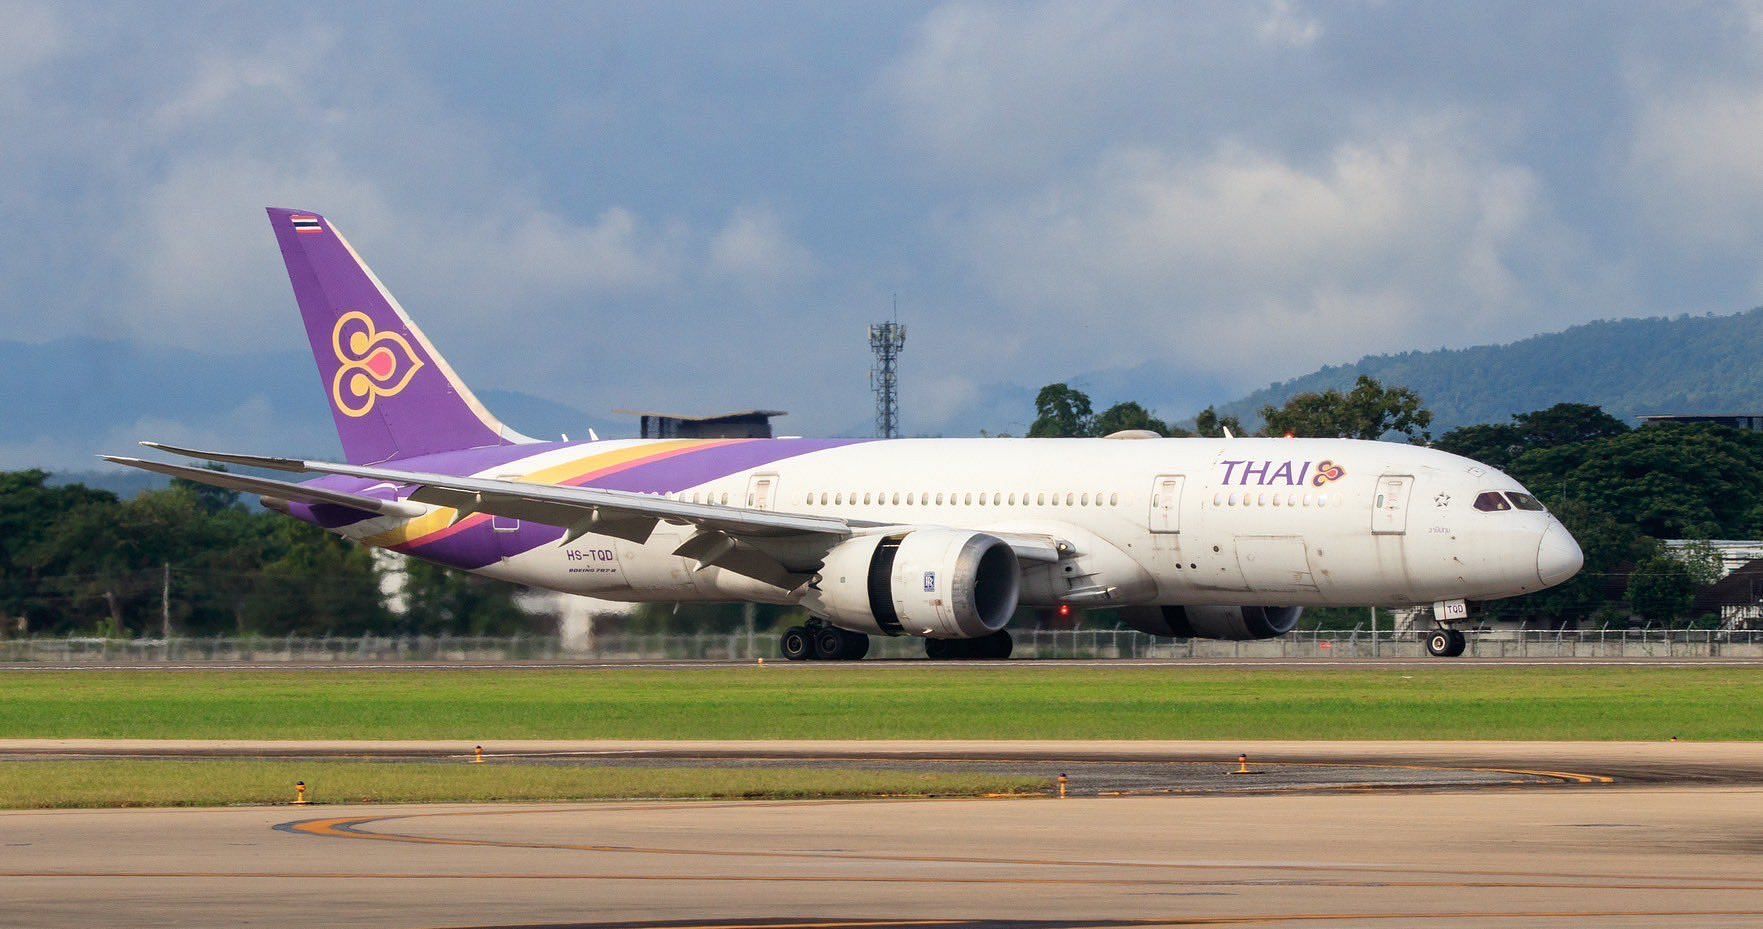 A British passenger attacked a steward on a Thai Airways flight (Image via @ThaiAirways/X) 